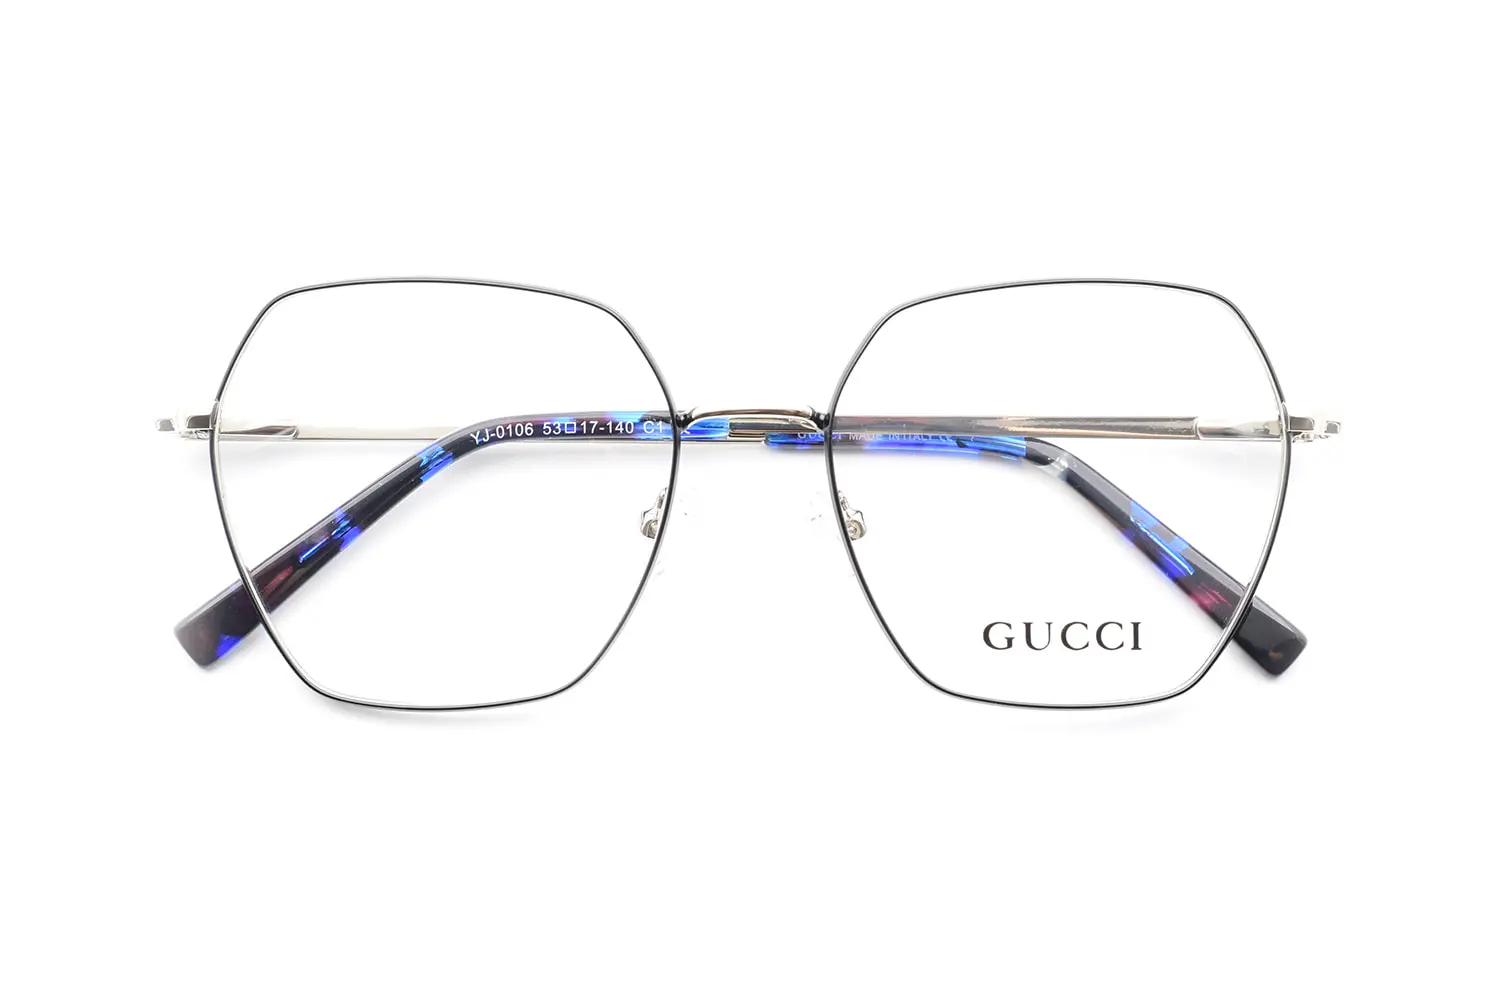 مشخصات عینک طبی Gucci yj-0106 c1